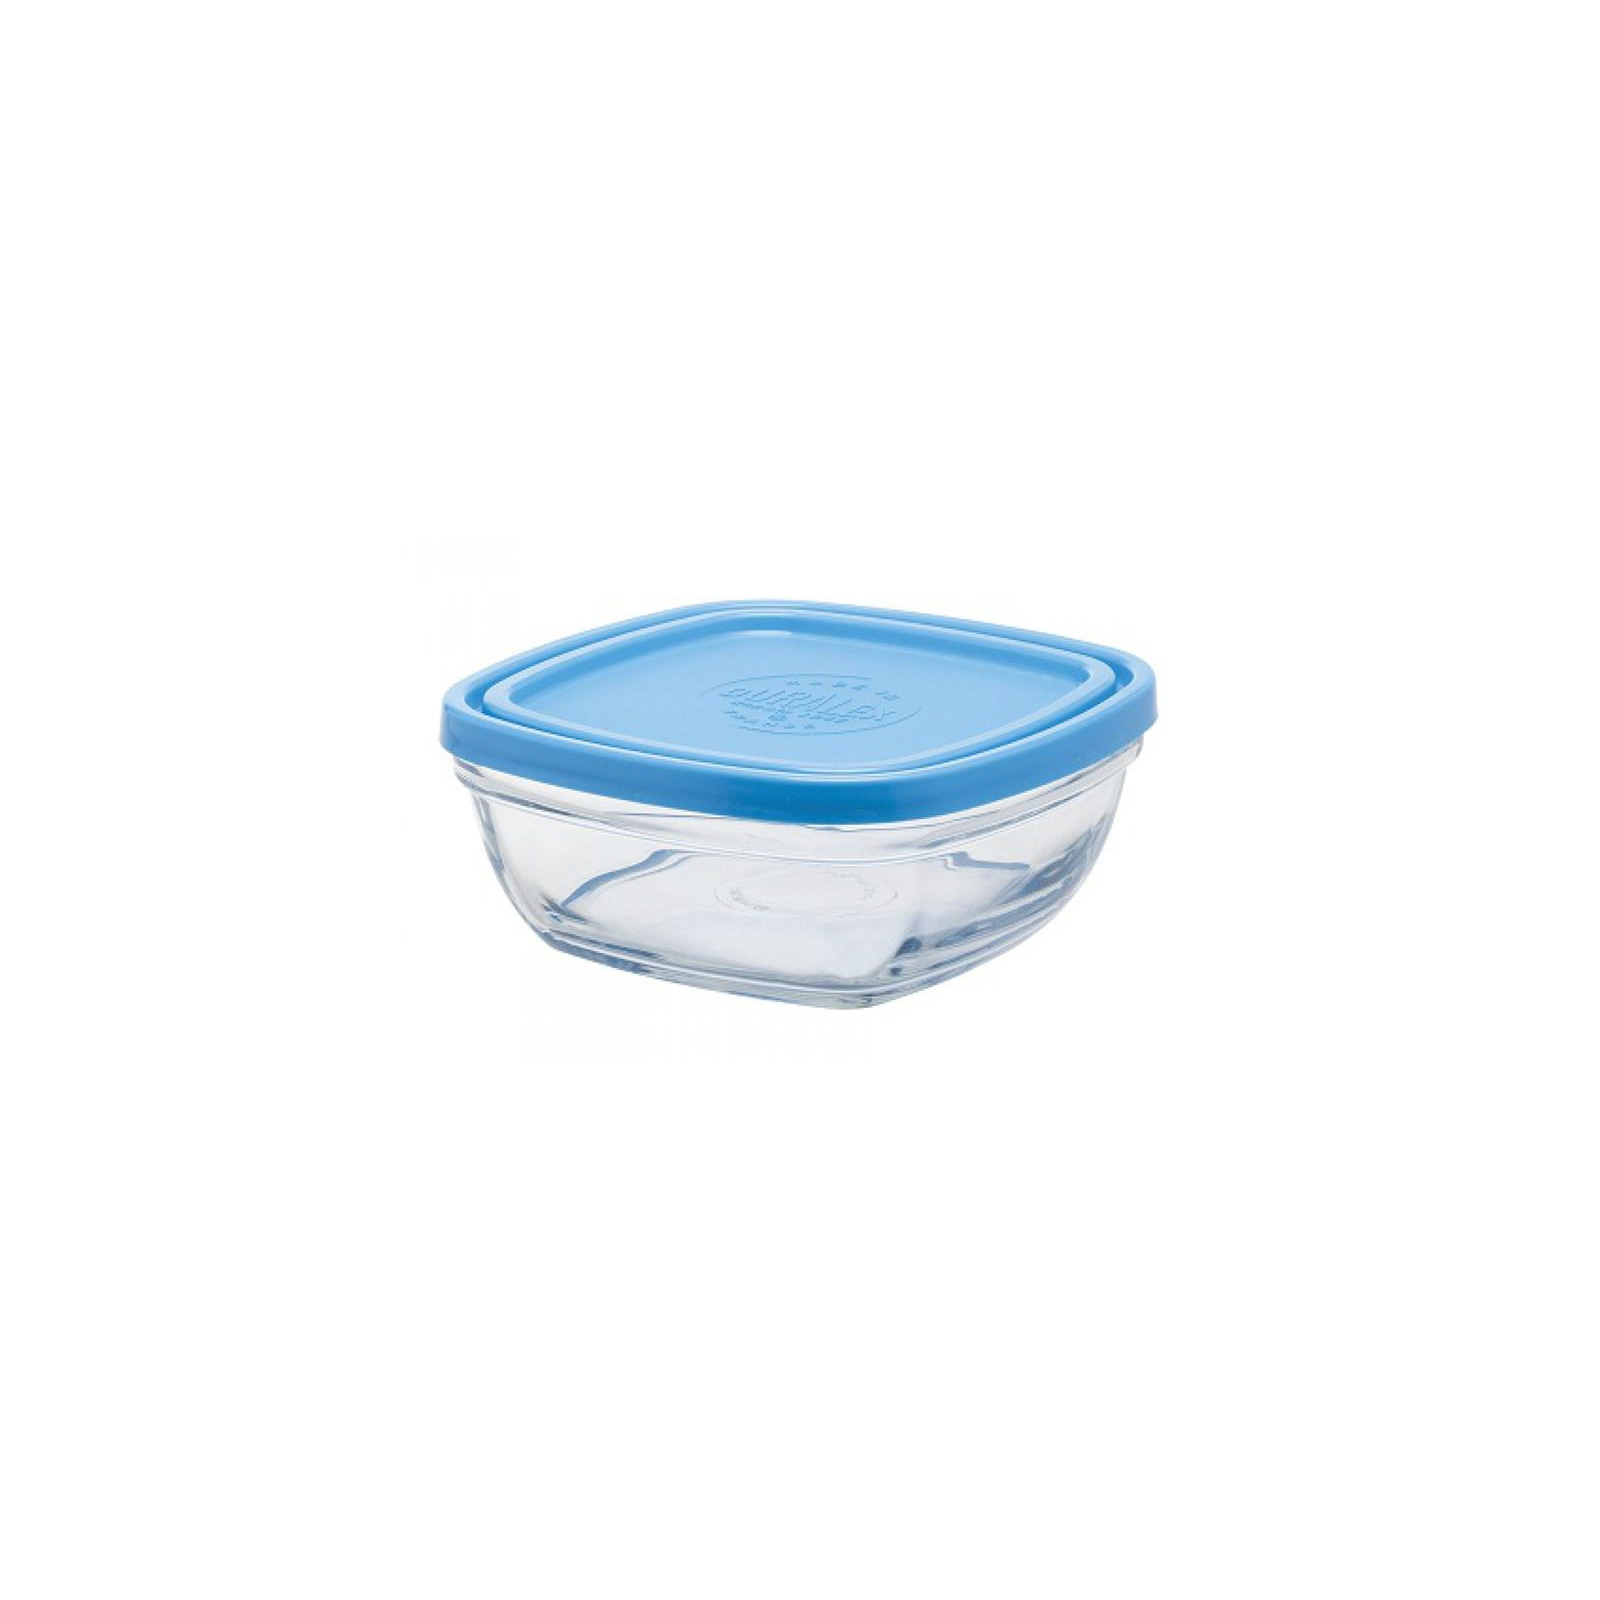 Пищевой контейнер Duralex Lys Carre Quadrate Blue 3100 мл 23 см (9024AM06)